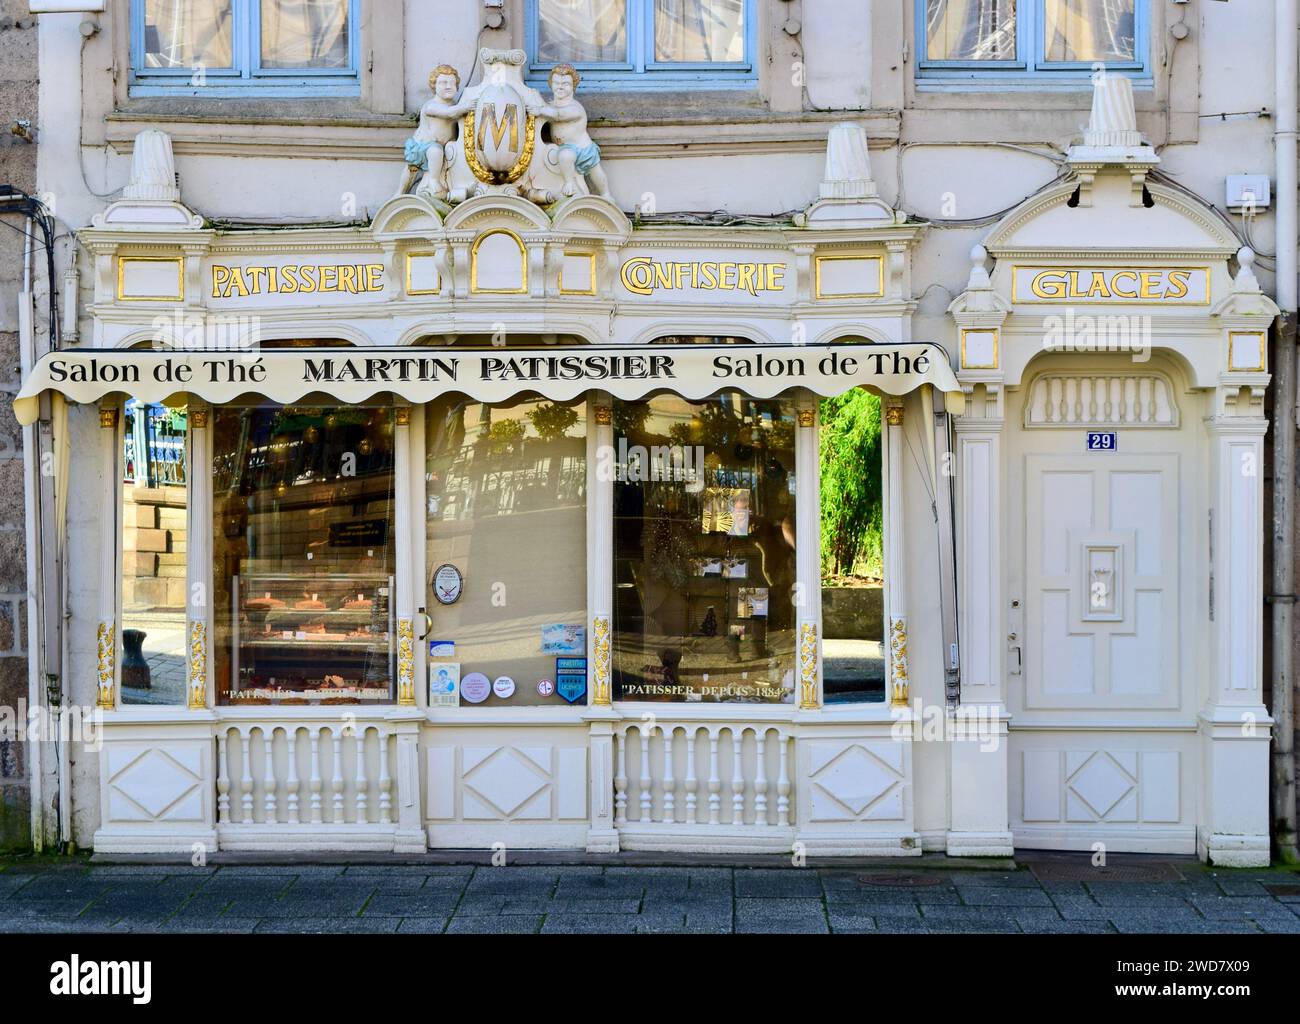 Pâtisserie antique 1880 Shopfront à Morlaix Bretagne, Bretagne France Banque D'Images